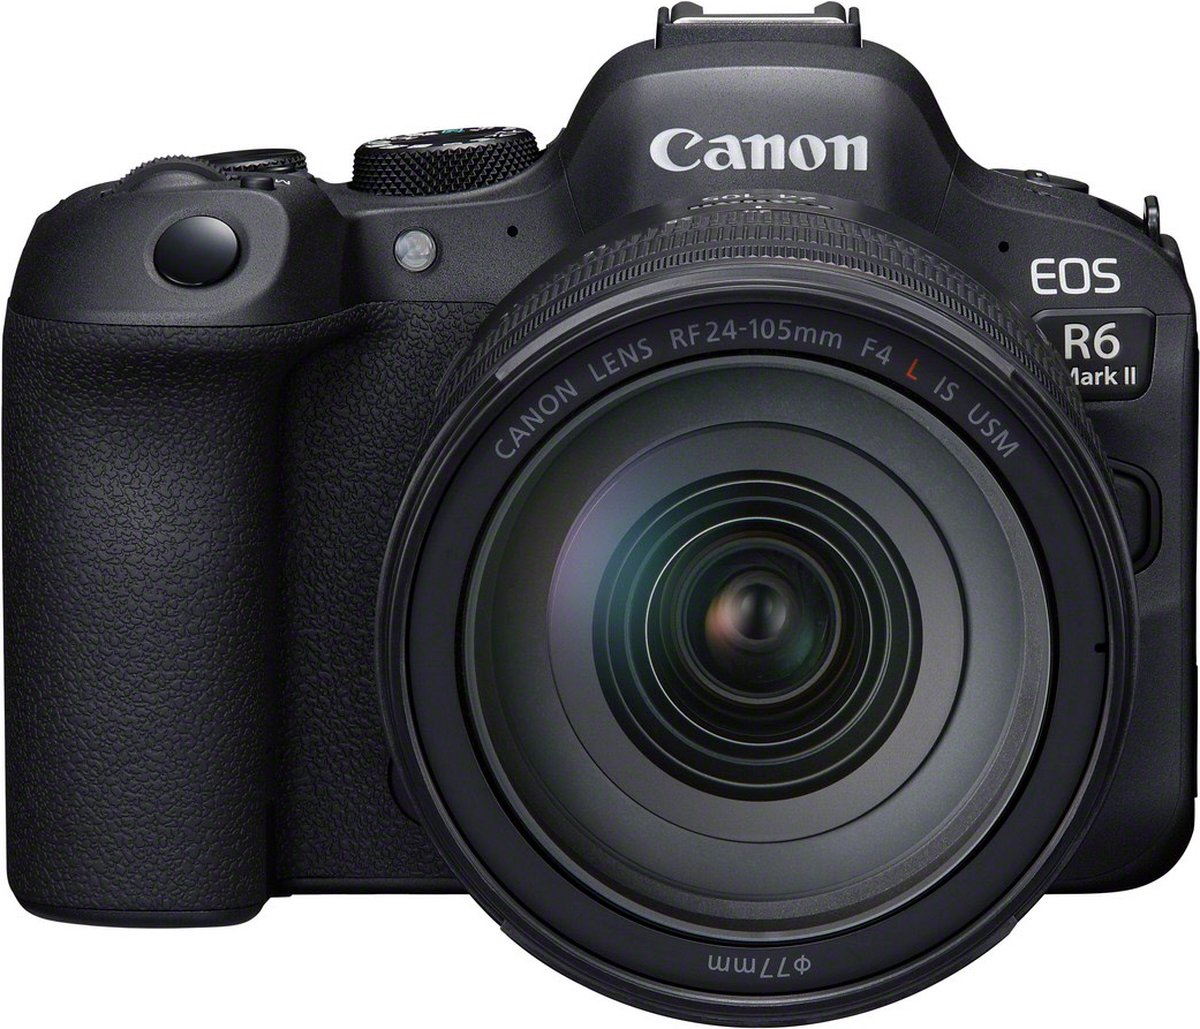 4. Uitstekend geschikt voor hybride professionele fotografie: Canon R6 II